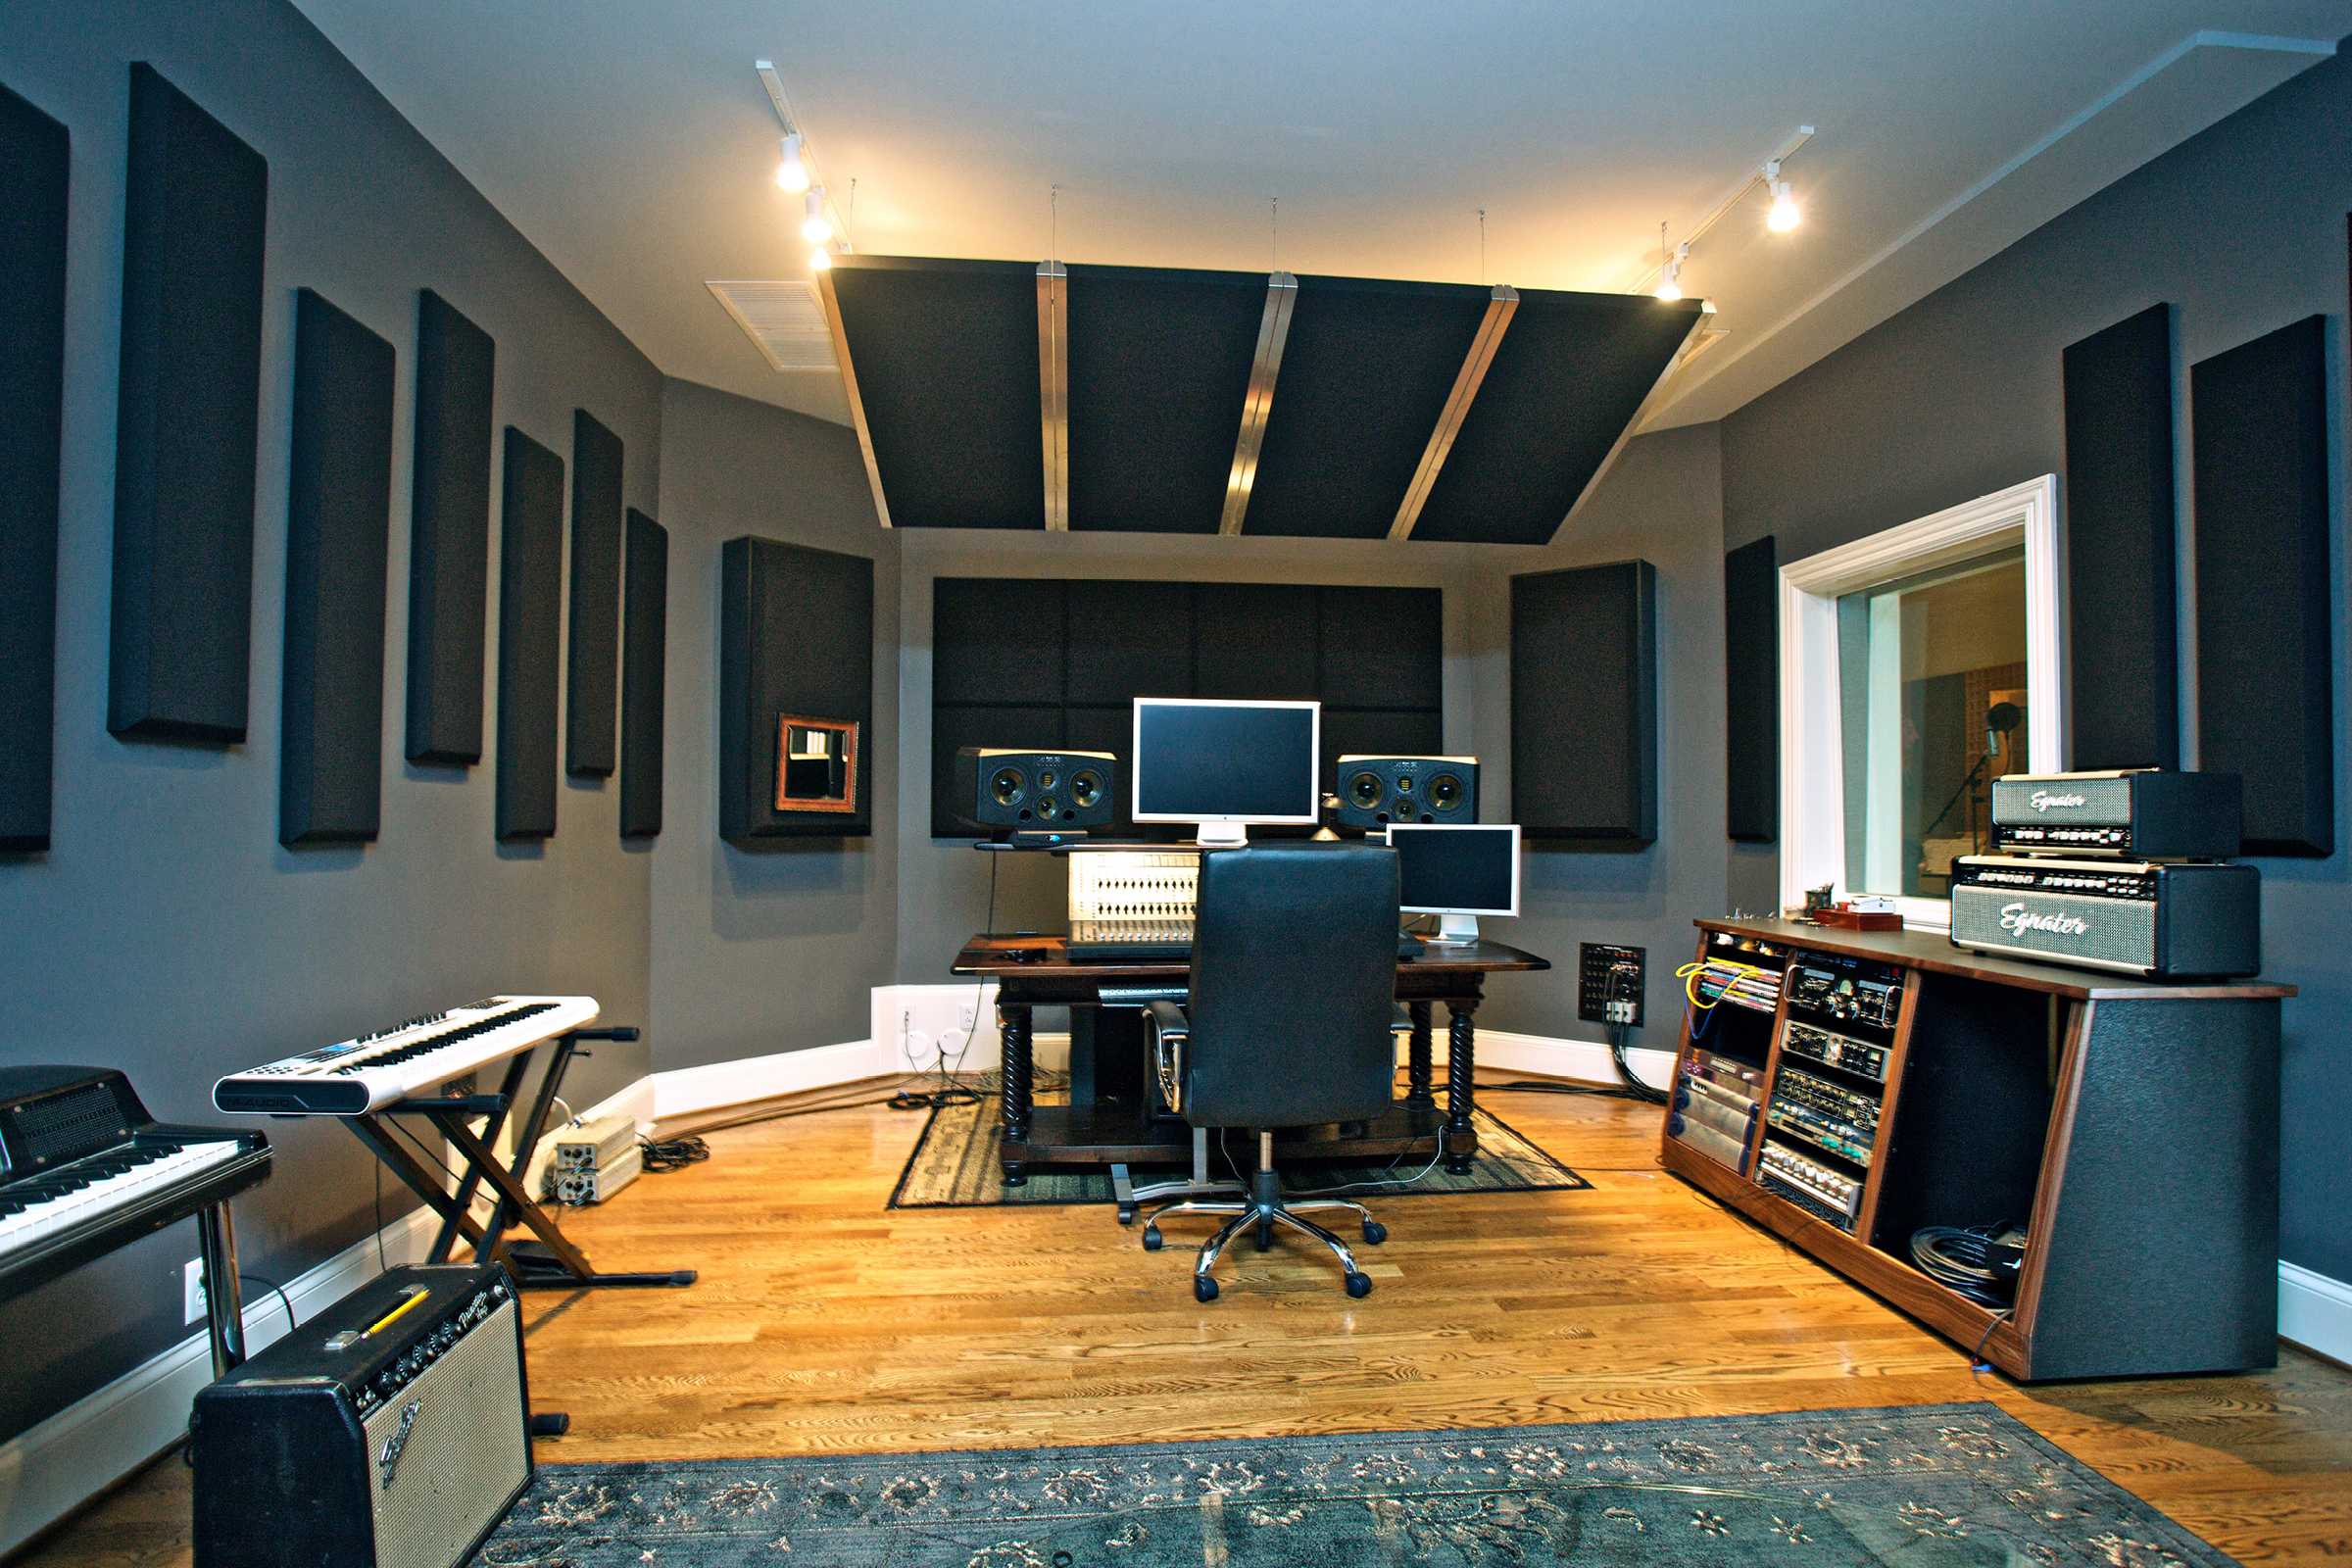 DIY Recording Studio Design & Panel Placement